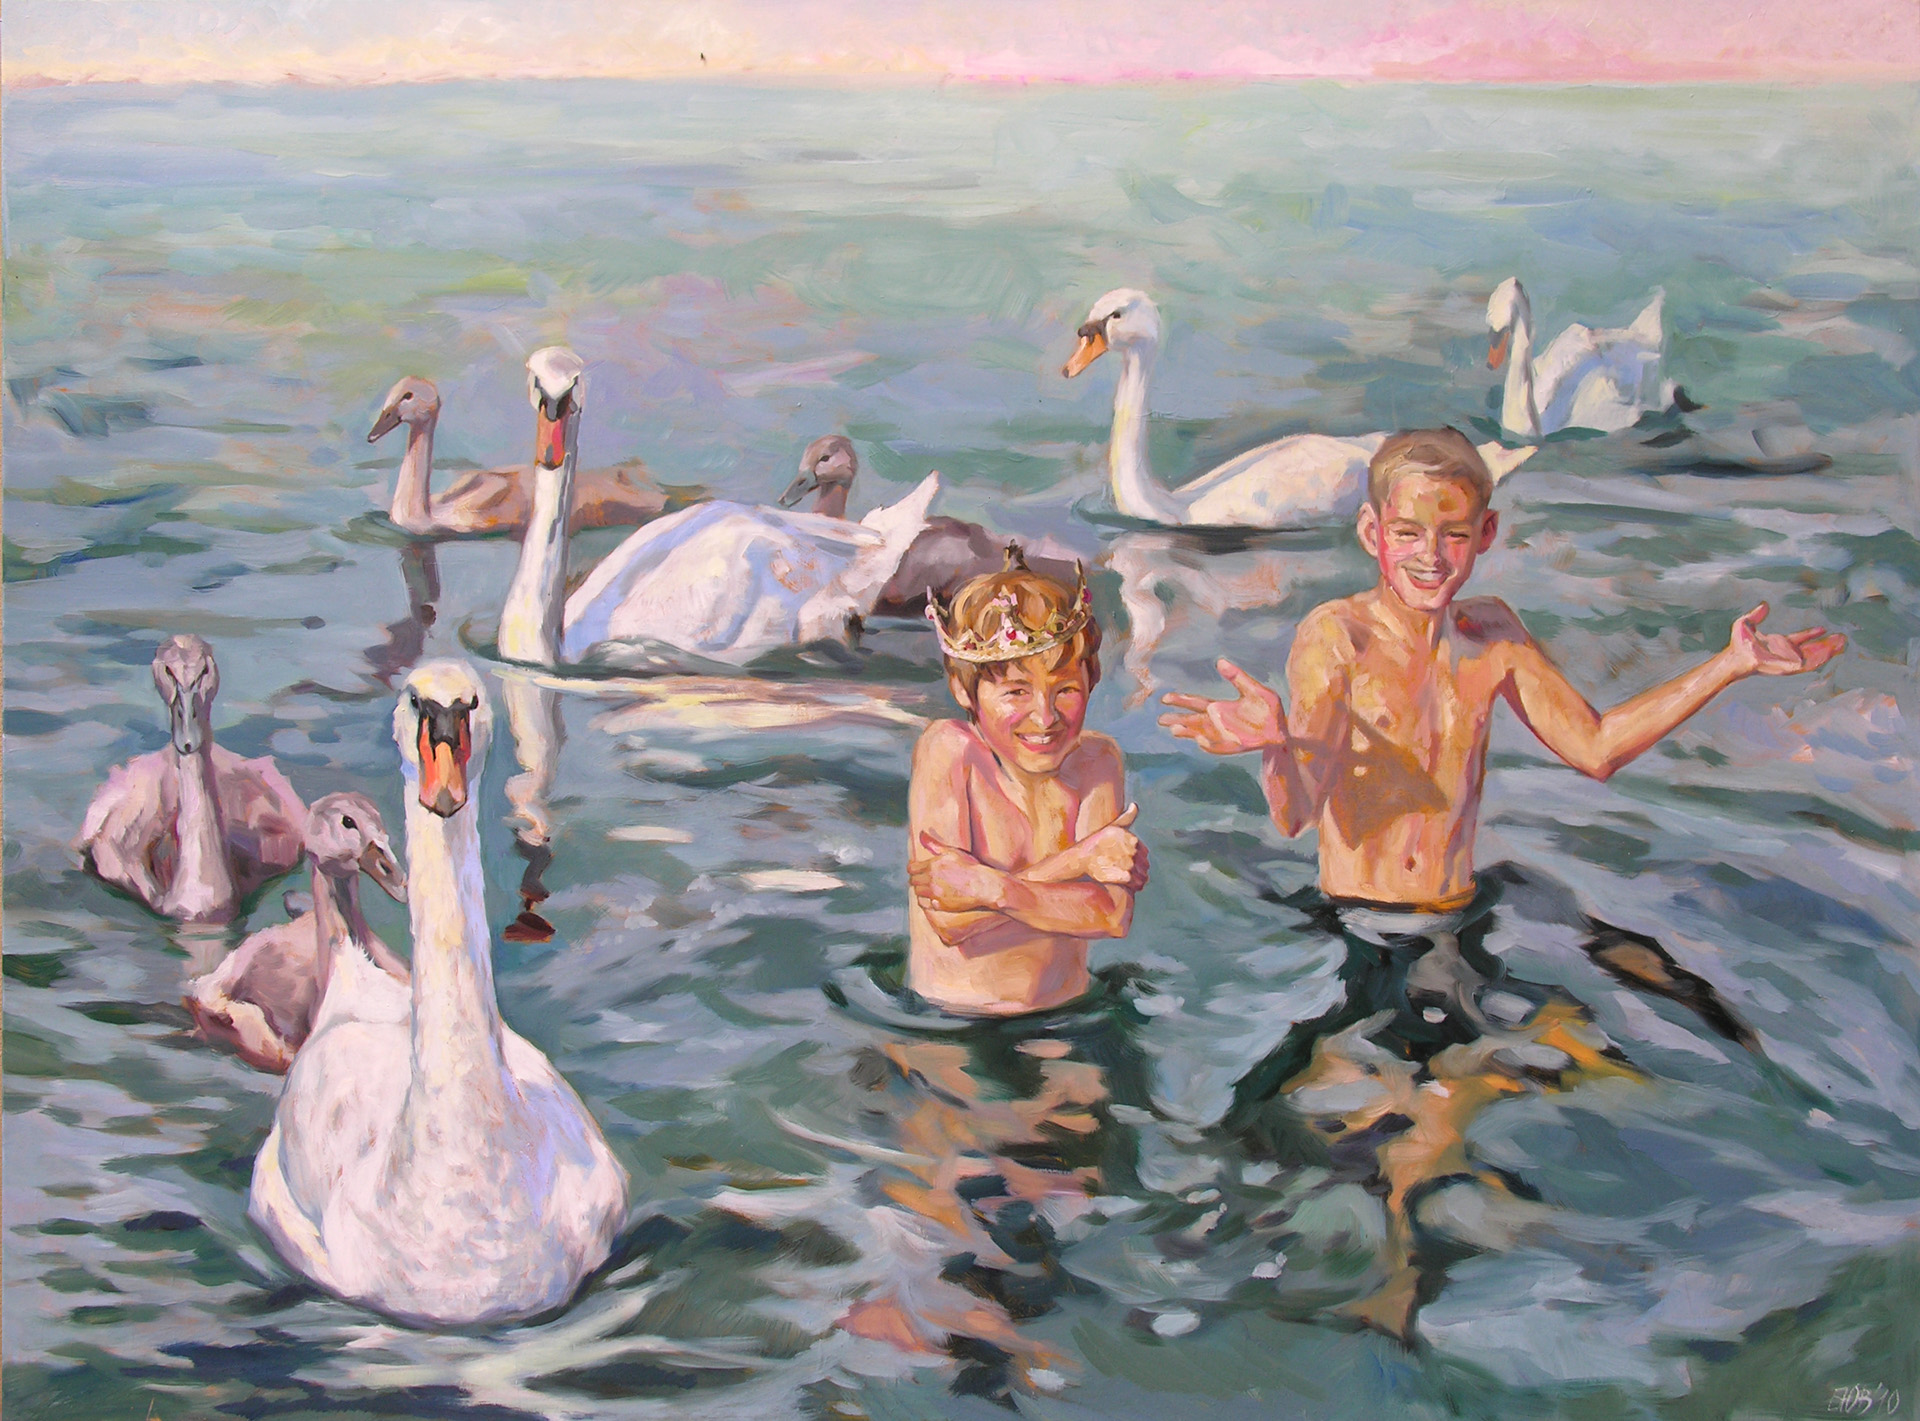 Gemälde von Julia Belot: Glücklich wie die Könige, Öl auf Leinwand, 120 cm x 160 cm, 2010